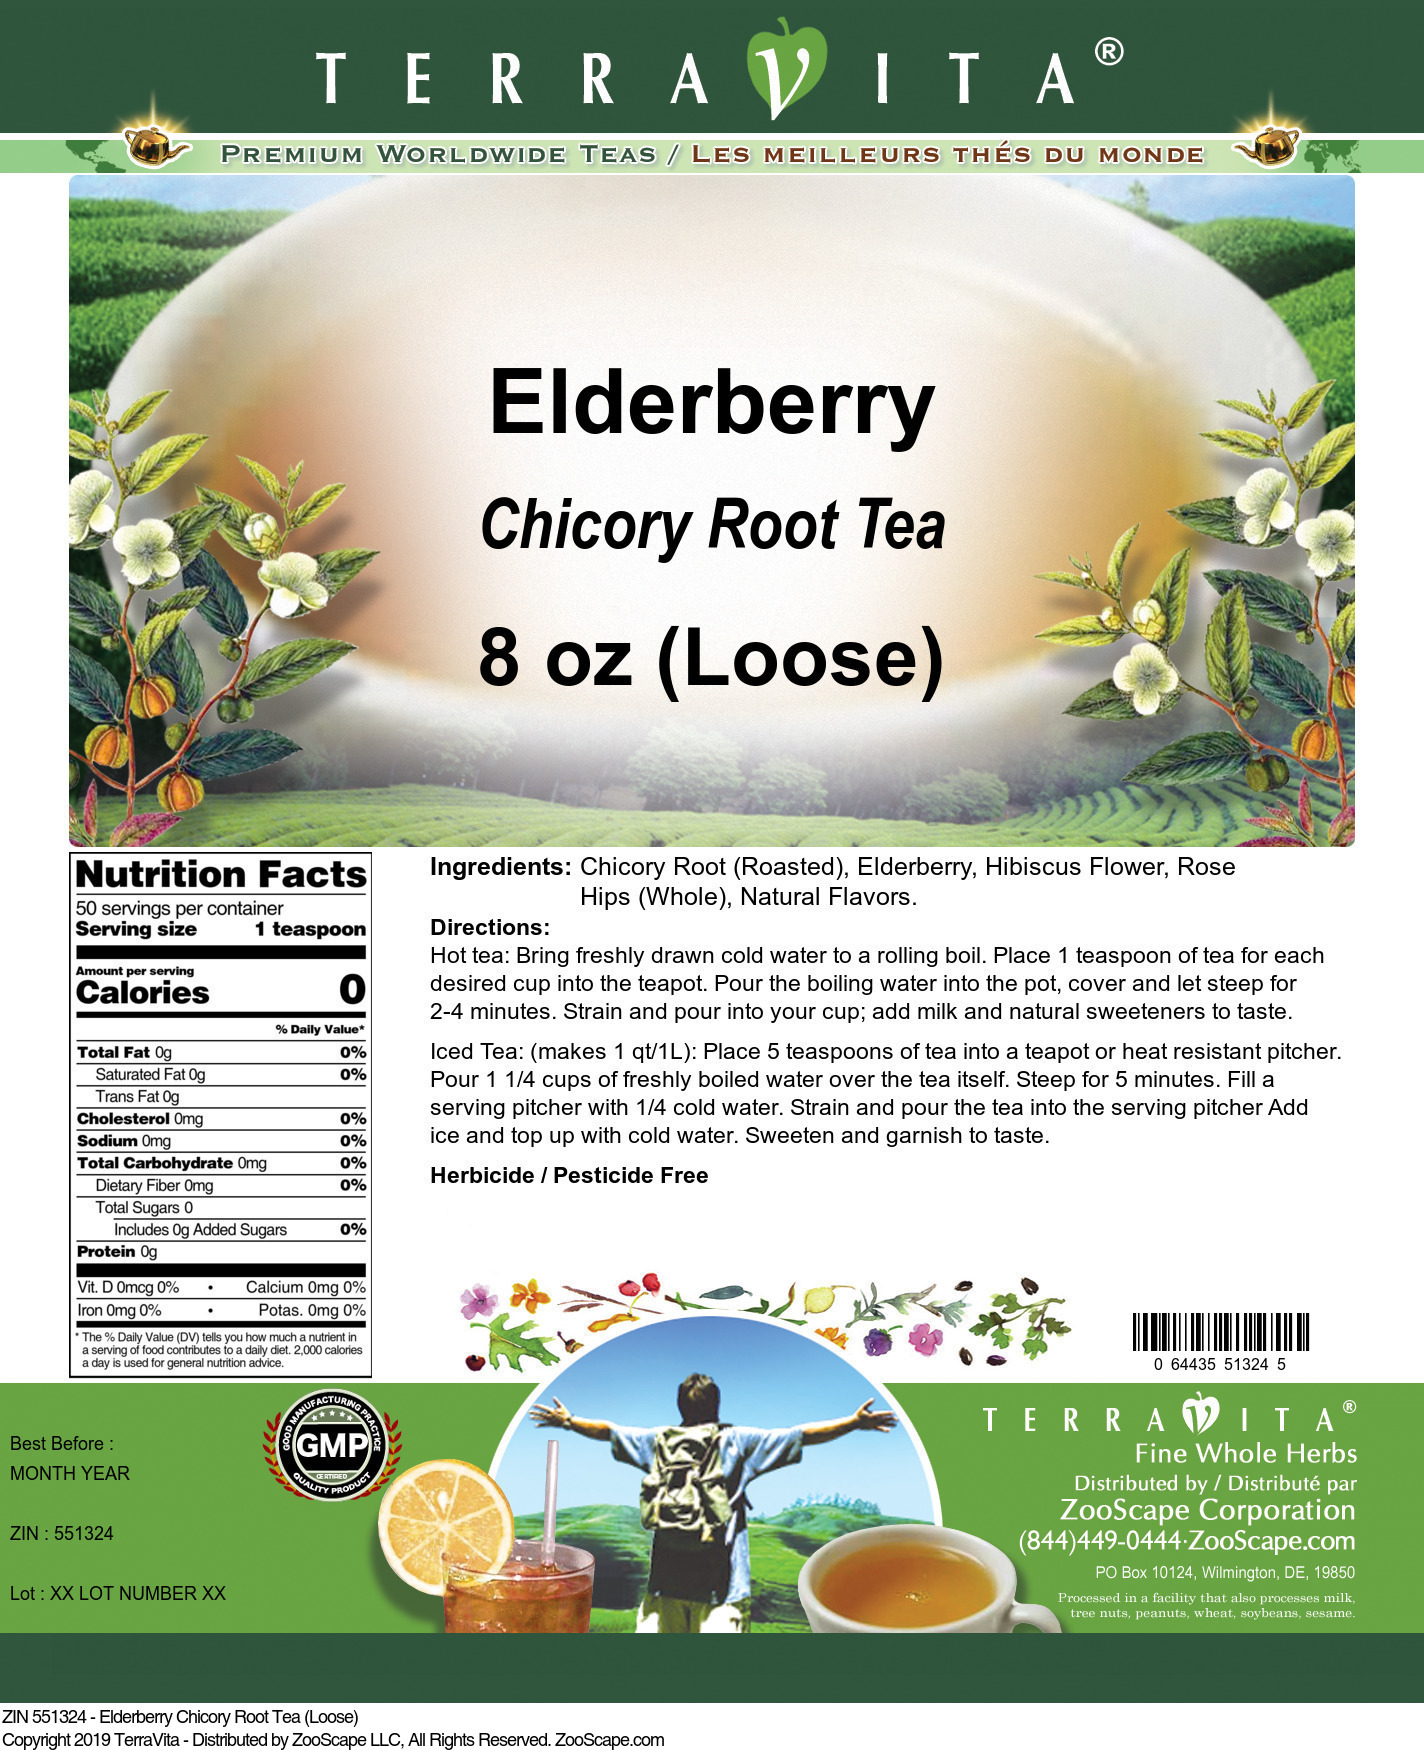 Elderberry Chicory Root Tea (Loose) - Label